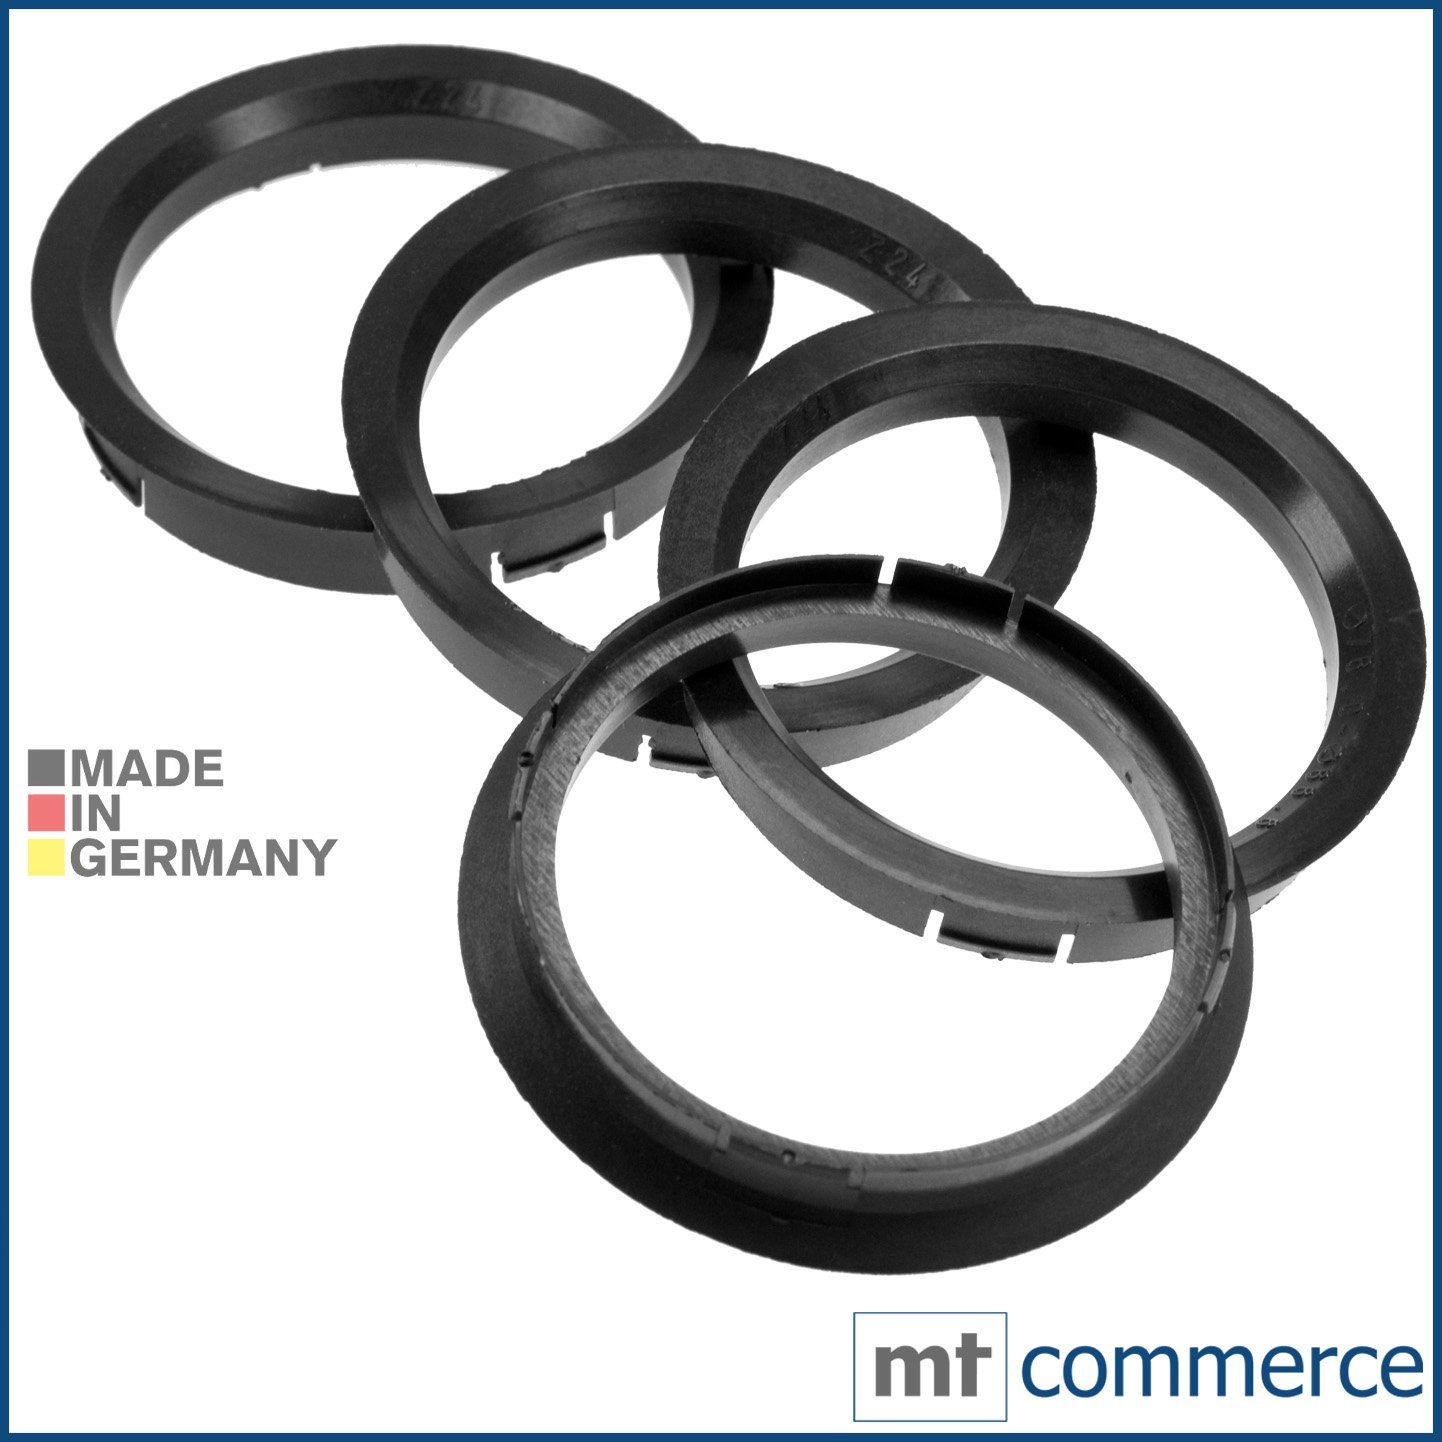 RKC Reifenstift 4X Zentrierringe schwarz Felgen Ringe Made in Germany, Maße: 76,0 x 66,6 mm